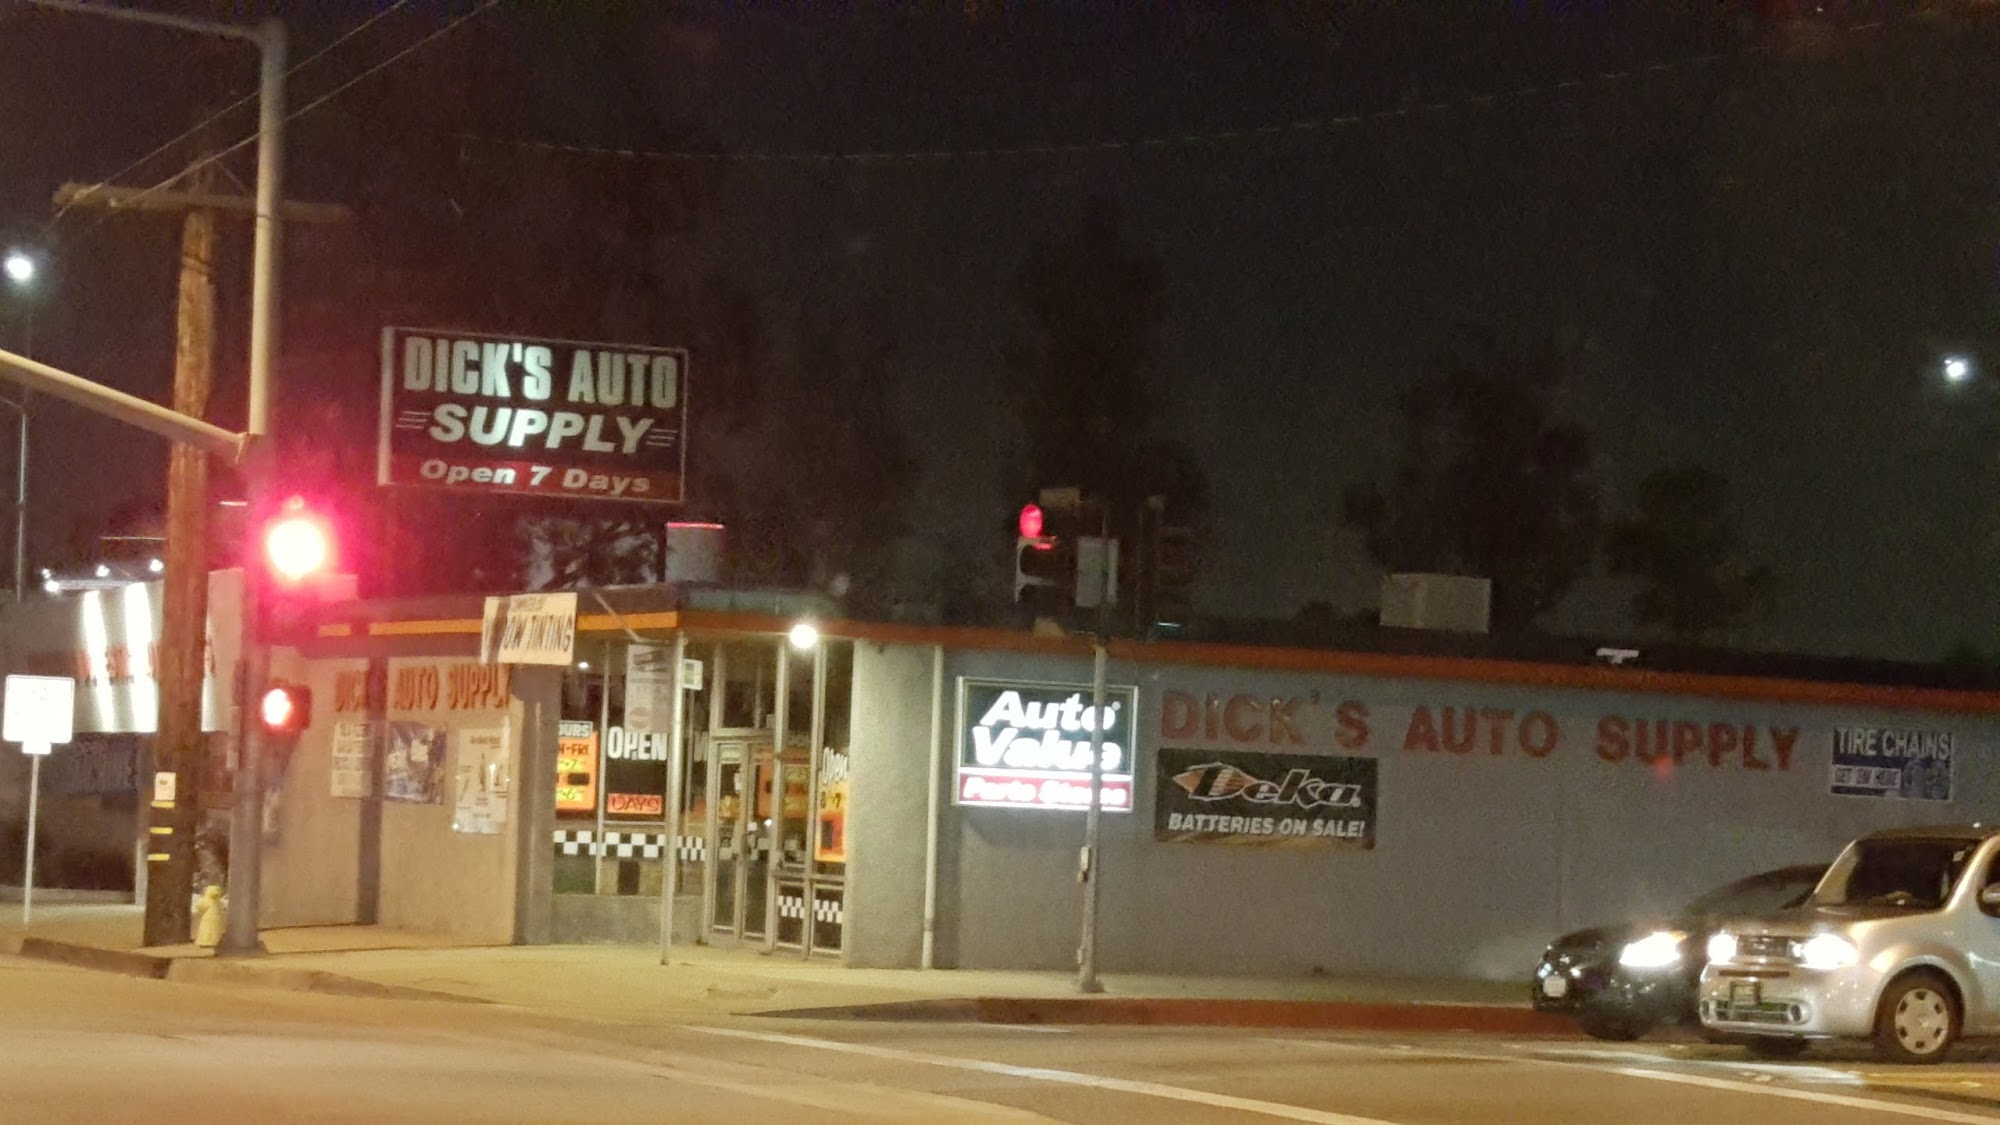 Dick's Auto Supply